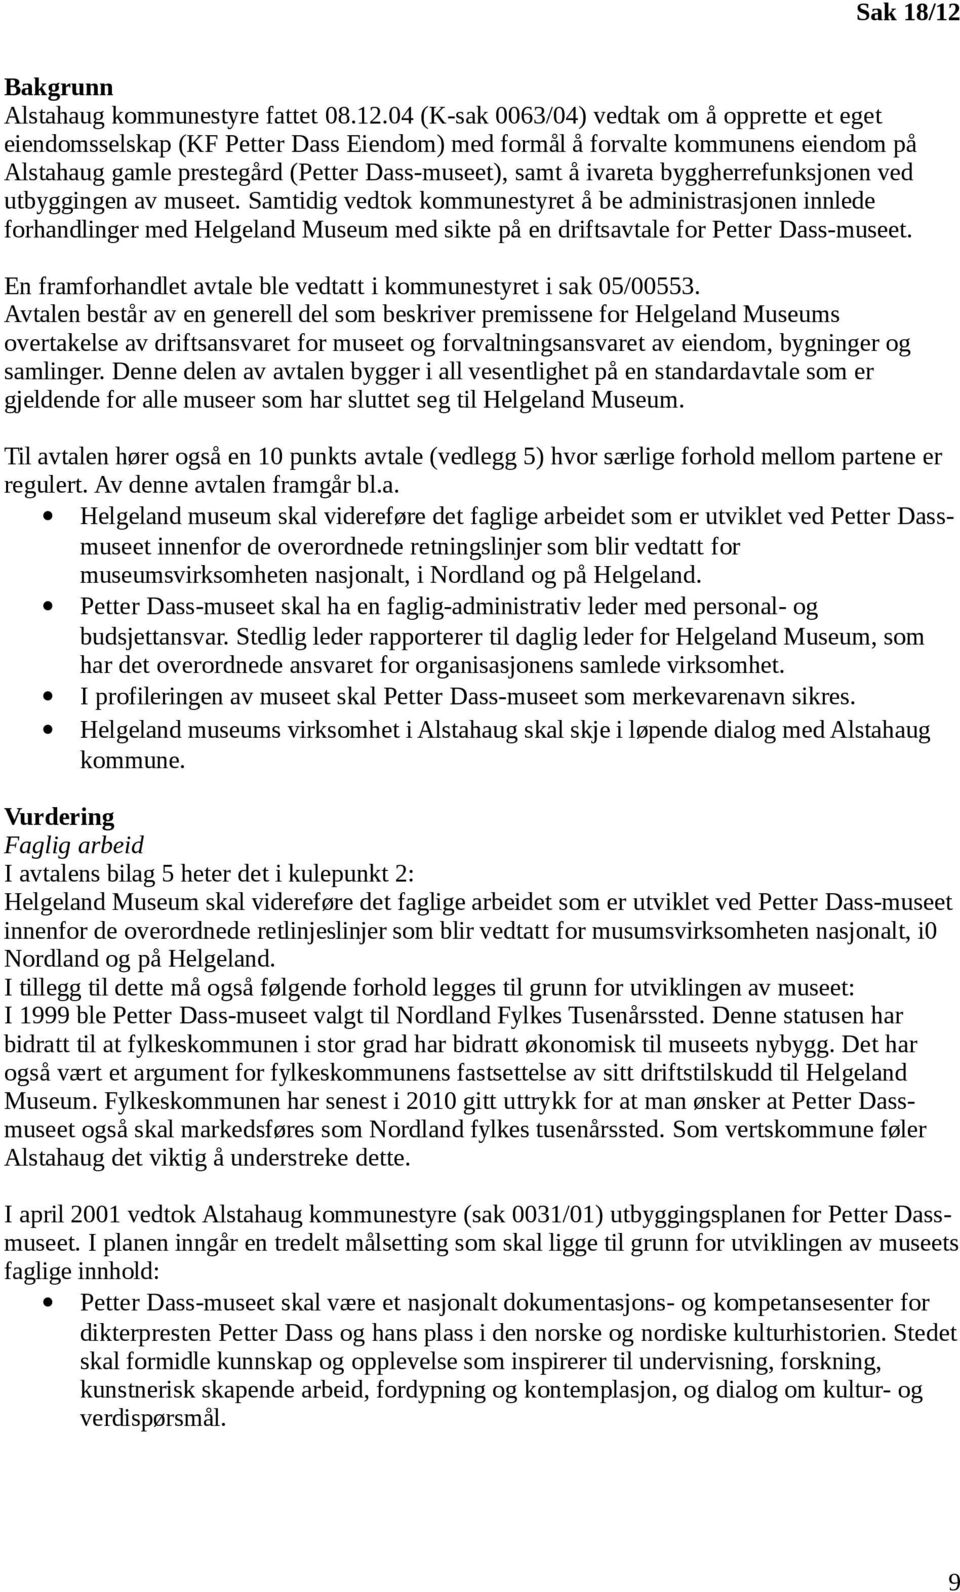 04 (K-sak 0063/04) vedtak om å opprette et eget eiendomsselskap (KF Petter Dass Eiendom) med formål å forvalte kommunens eiendom på Alstahaug gamle prestegård (Petter Dass-museet), samt å ivareta